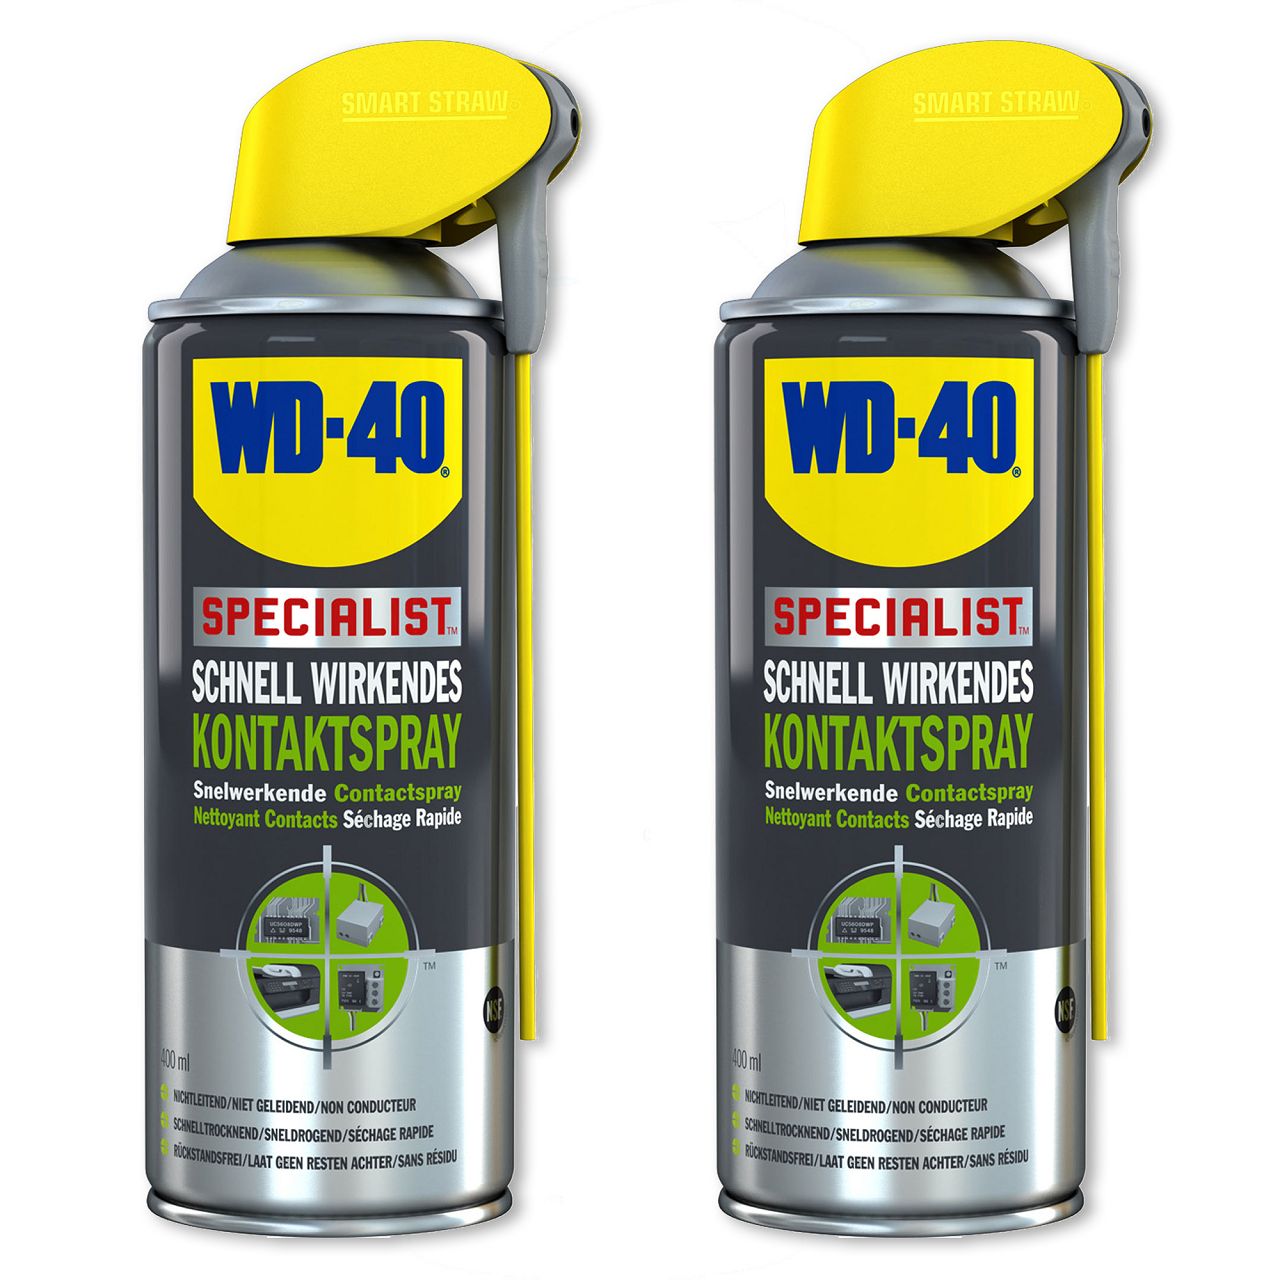 WD-40 SPECIALIST 49368 Kontaktspray Kontaktreiniger Elektronikspray 2x 400ml